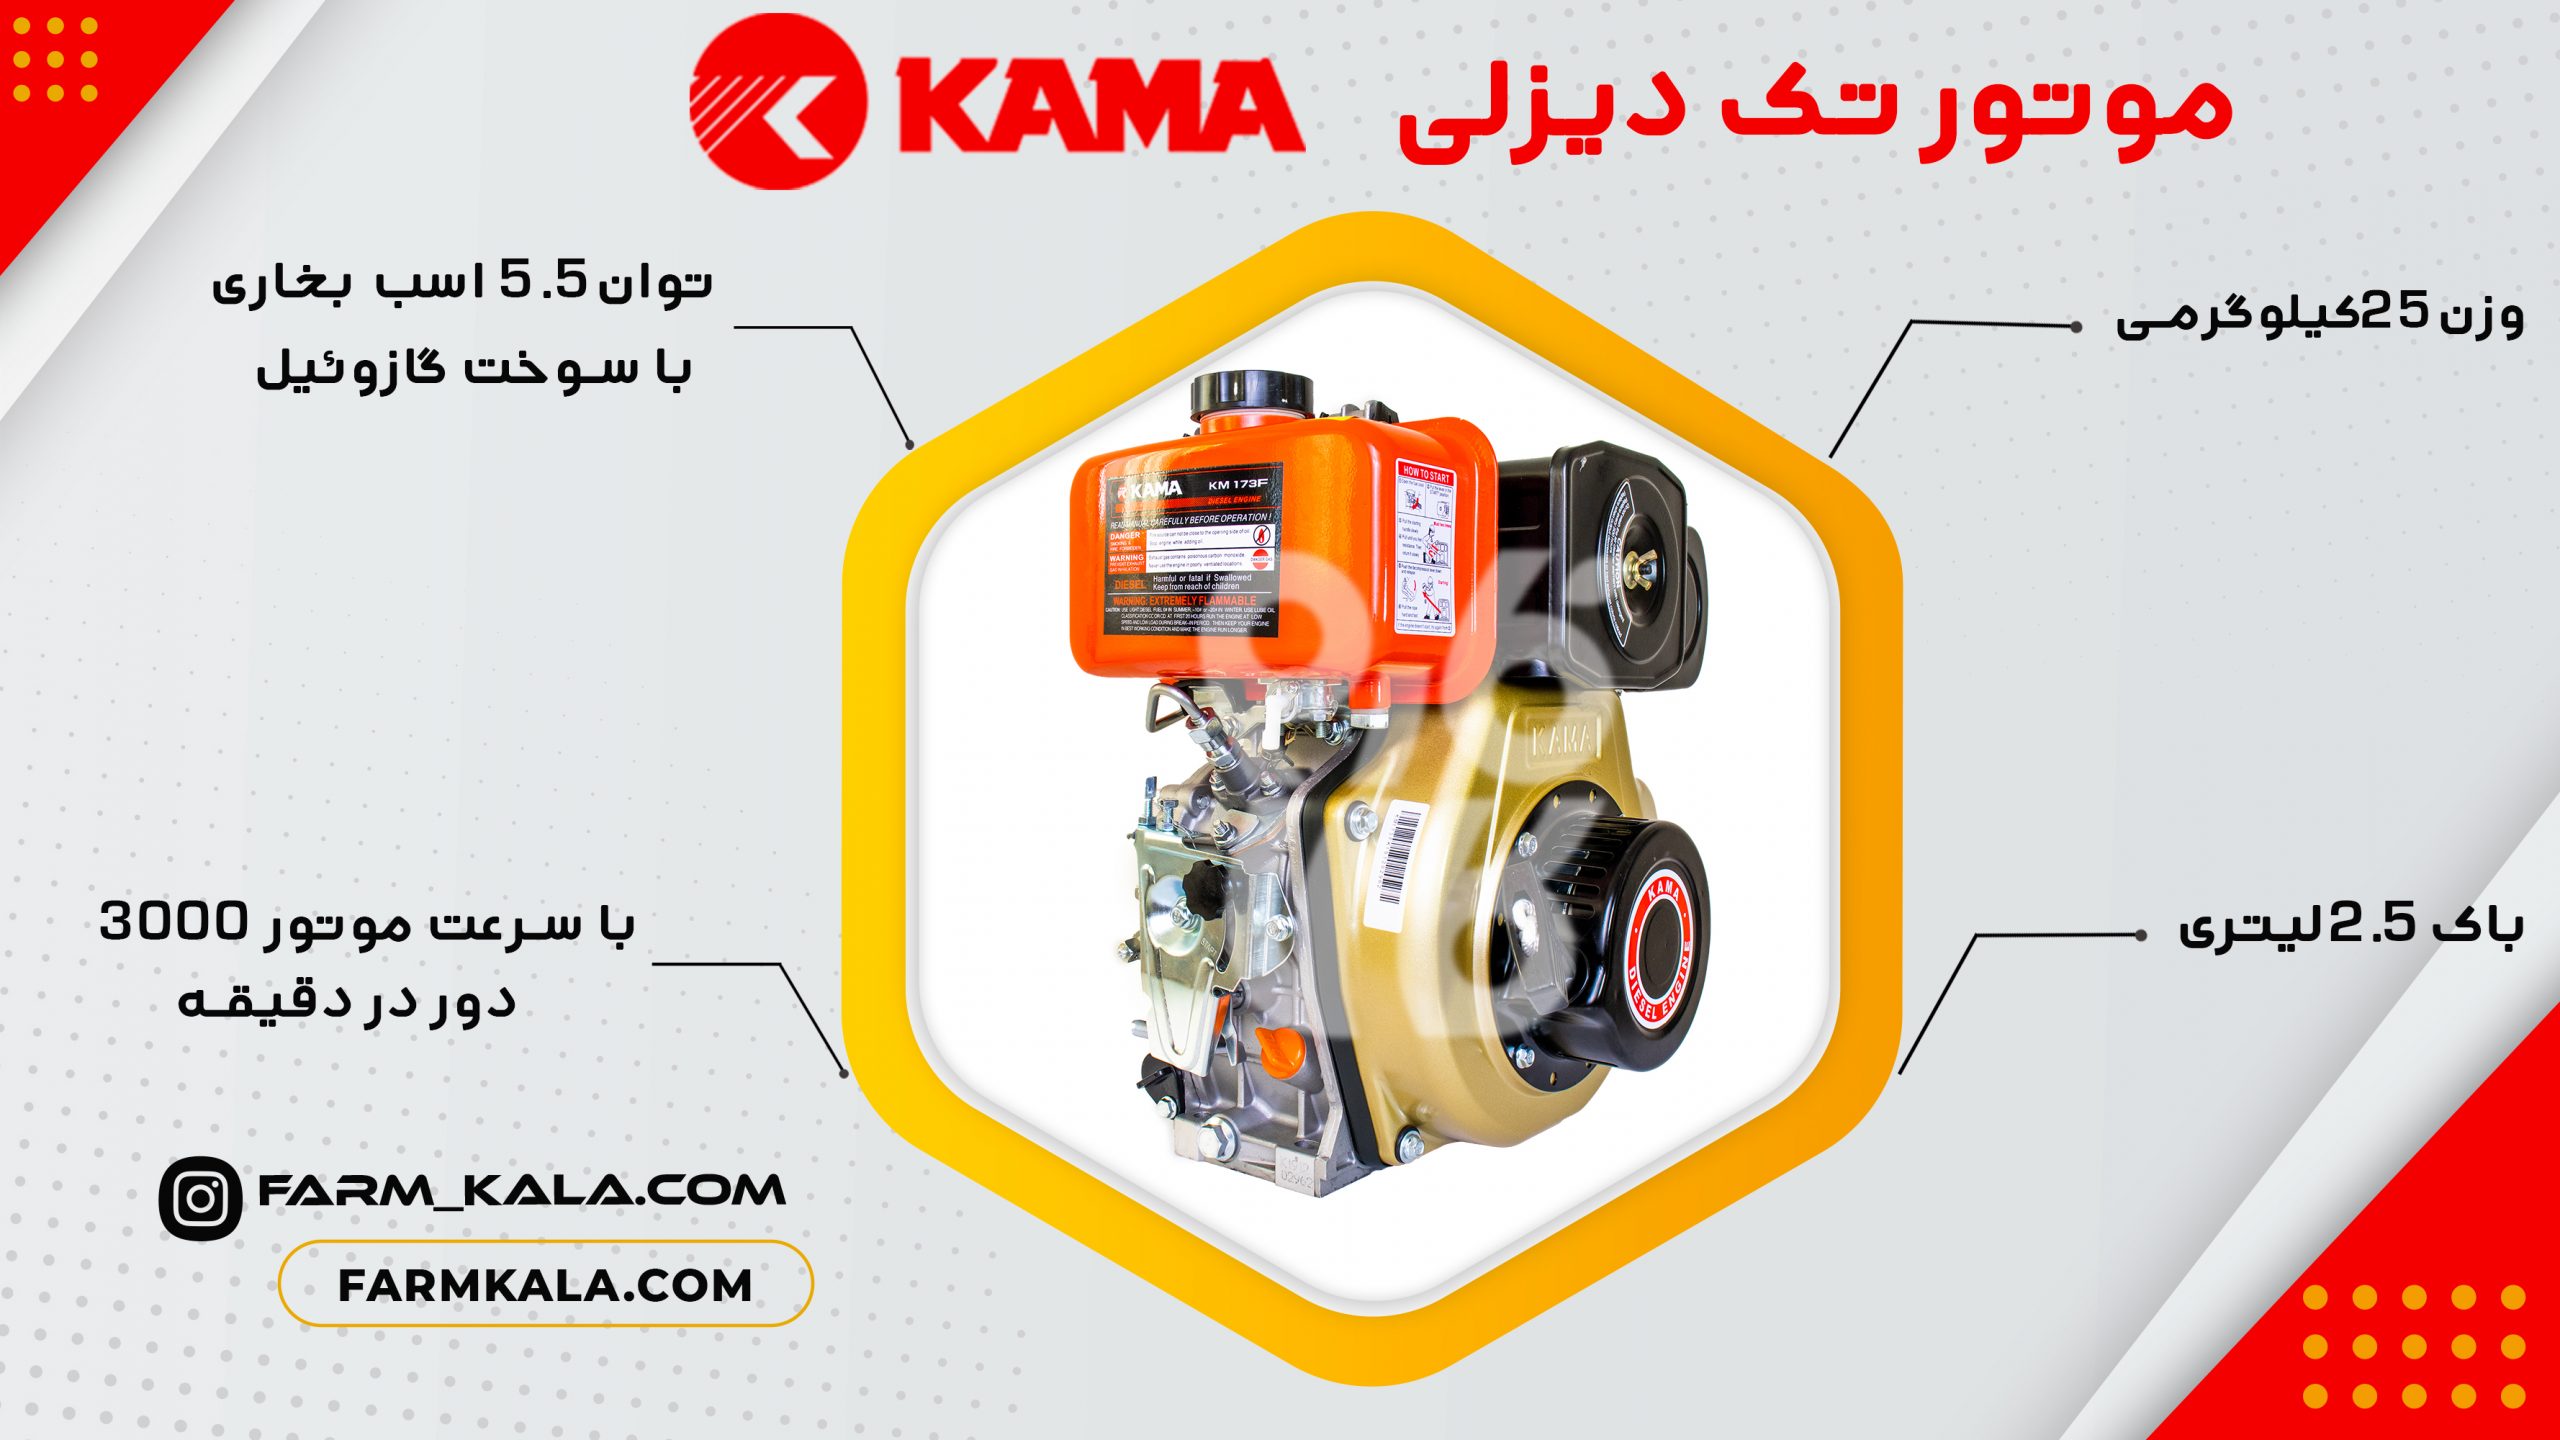 موتور گازوئیلی کاما - 5.5 اسب بخار